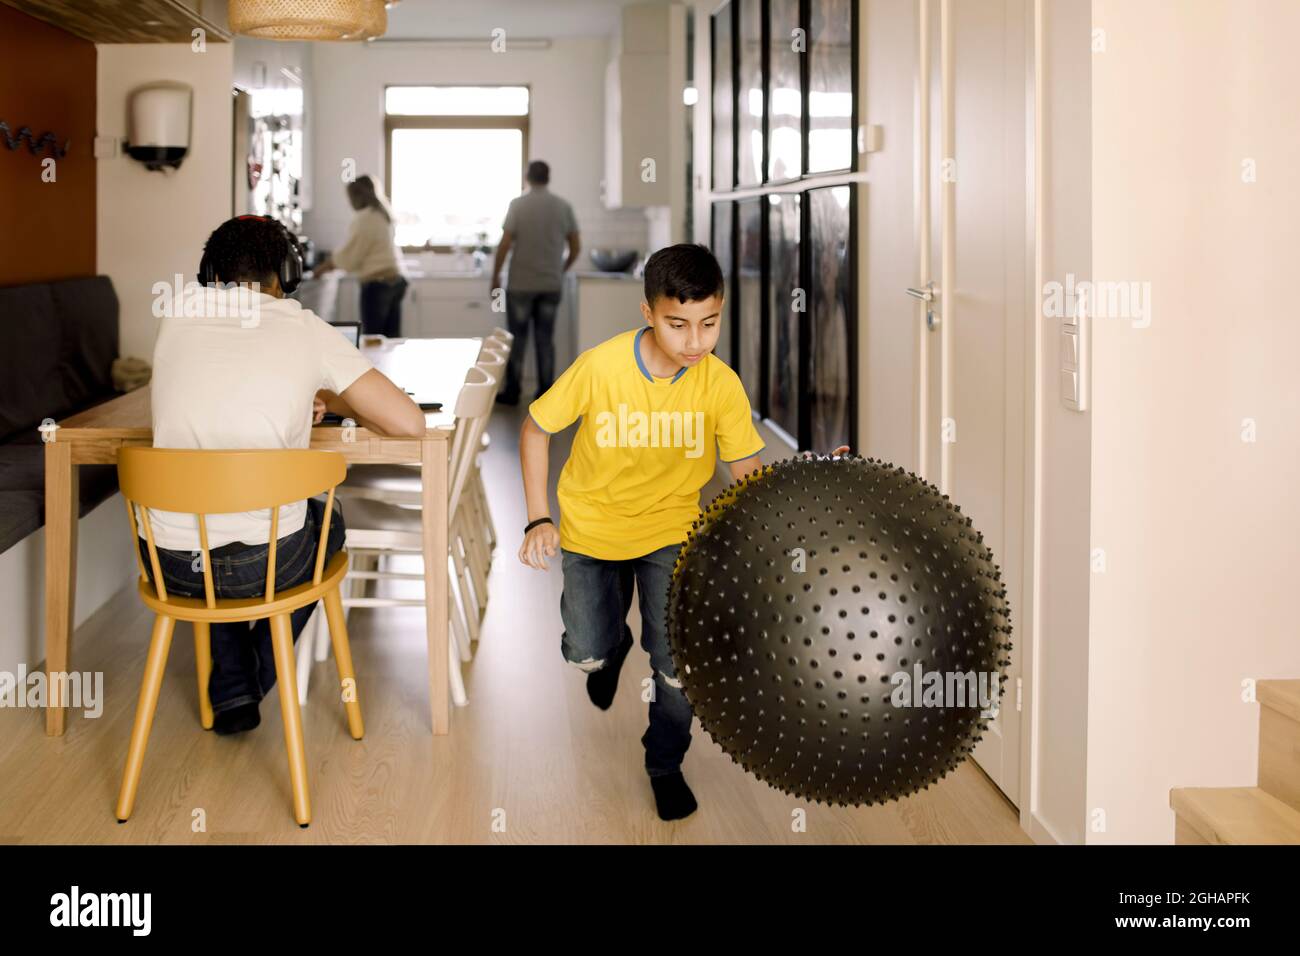 Pré-adolescent jouant avec le ballon de fitness à la maison Banque D'Images